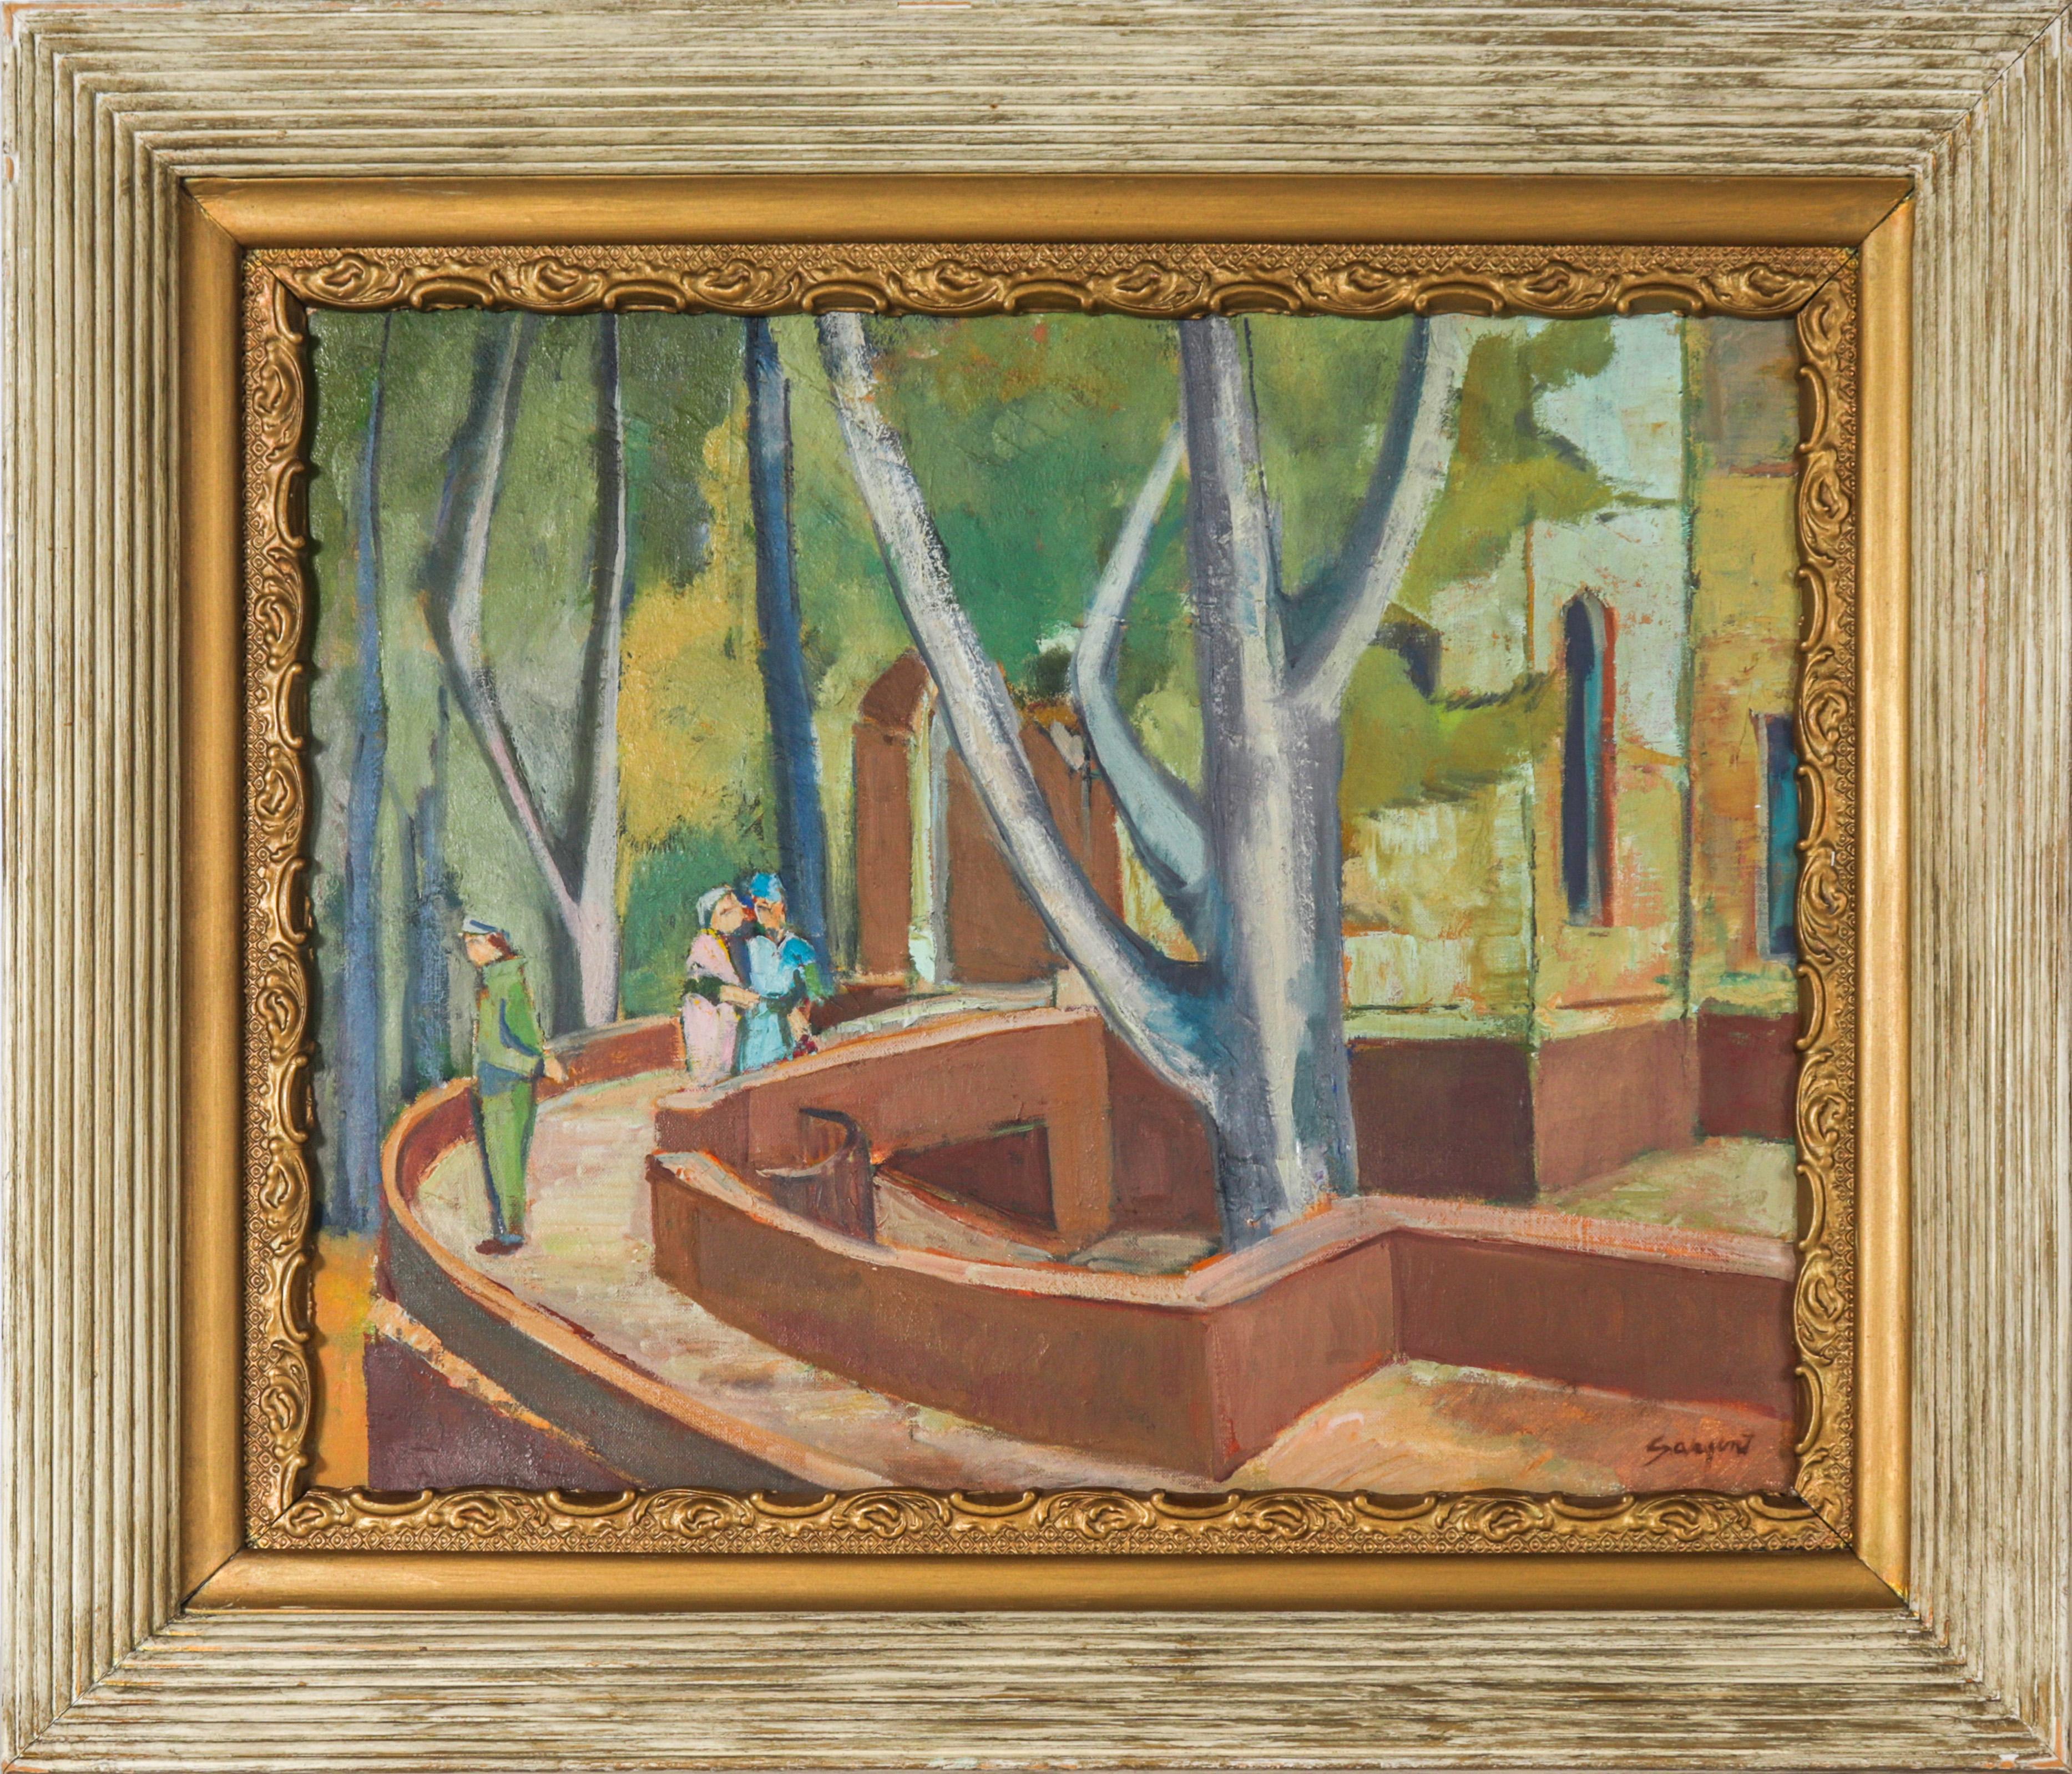 Freeman Sargent Landscape Painting - "Figures & Trees" (Paris) 20th Century Oil